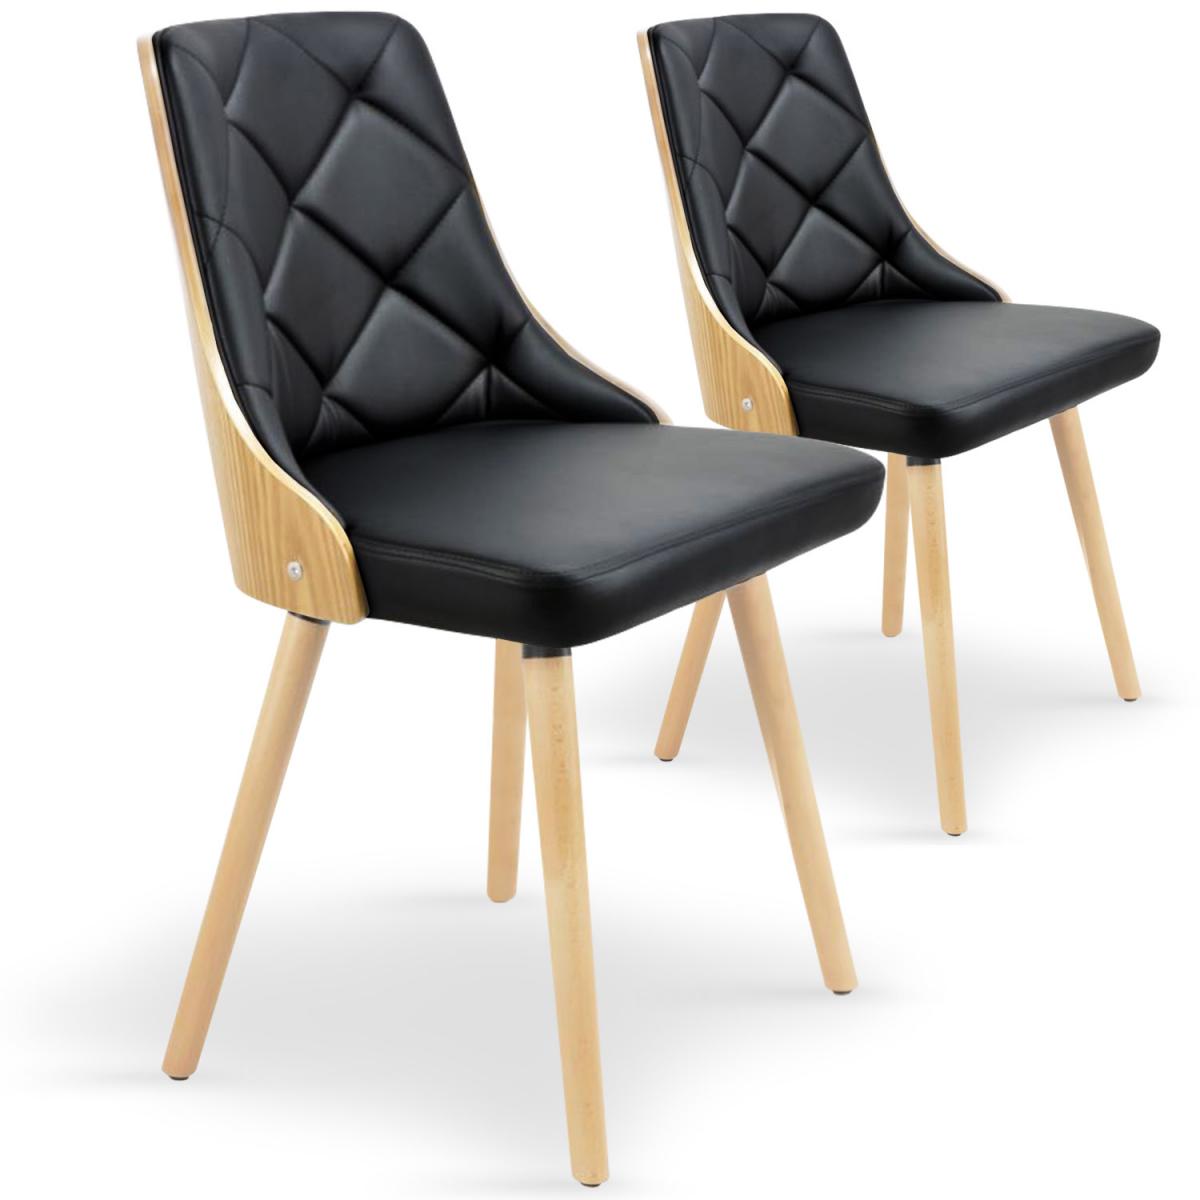 MENZZO - Lot de 2 chaises scandinaves Lalix Chêne Clair & Noir - Chaises